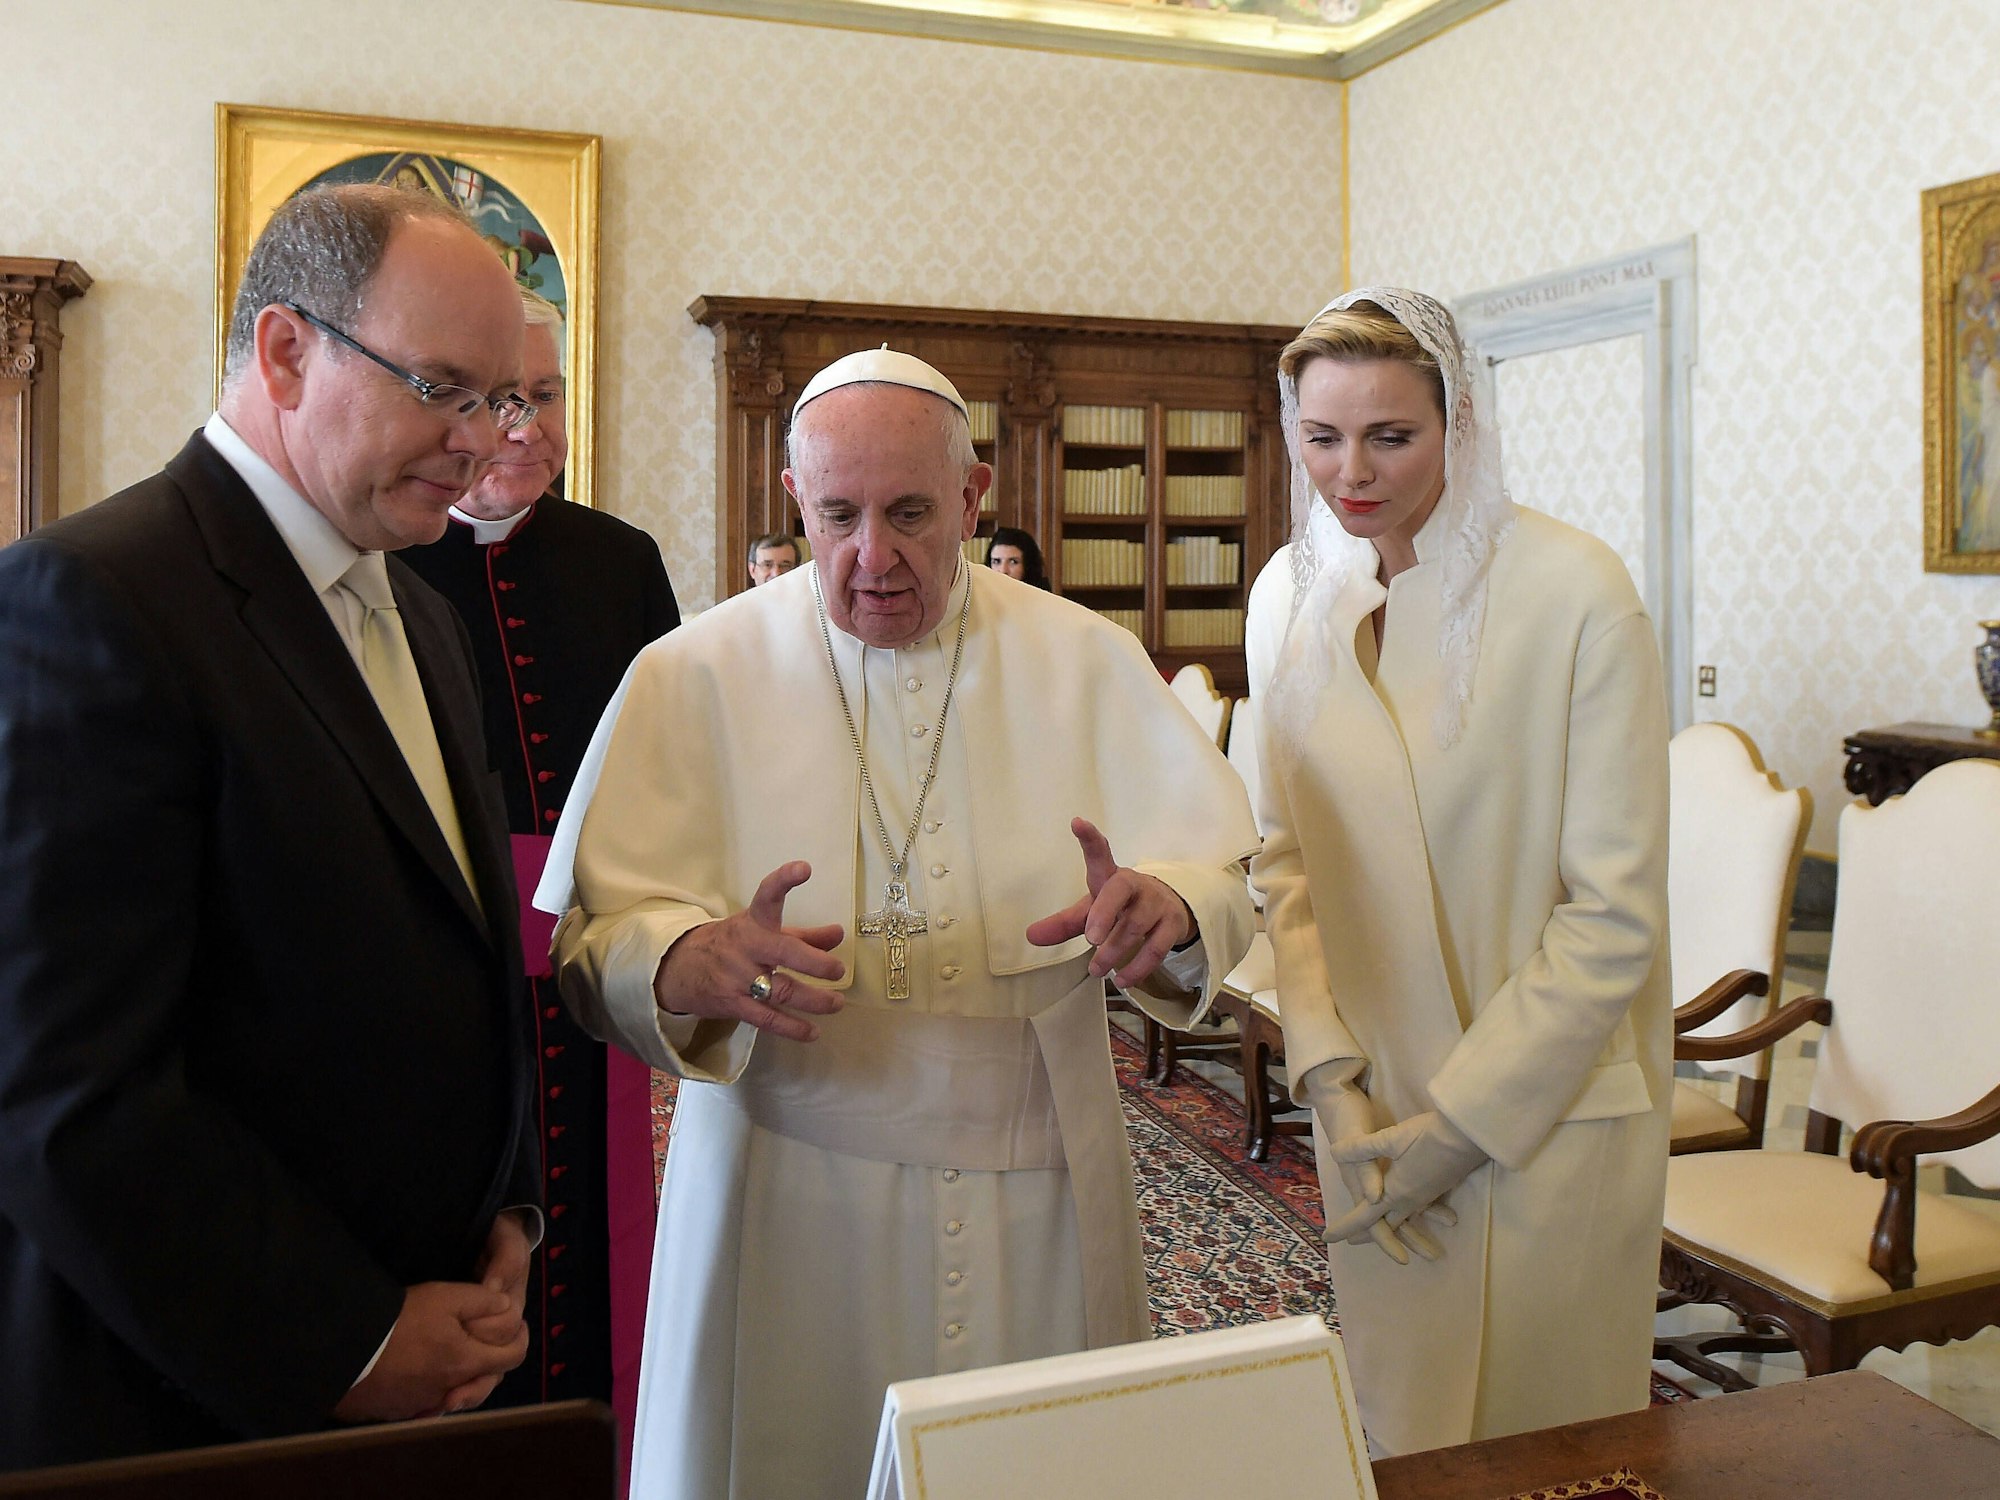 Fürstin Charlène von Monaco gehört zu einem kleinen Kreis an Frauen, die vor dem Papst Weiß tragen dürfen. Bei einer Audienz 2016 nahm Charlène diese Ehre in Anspruch.